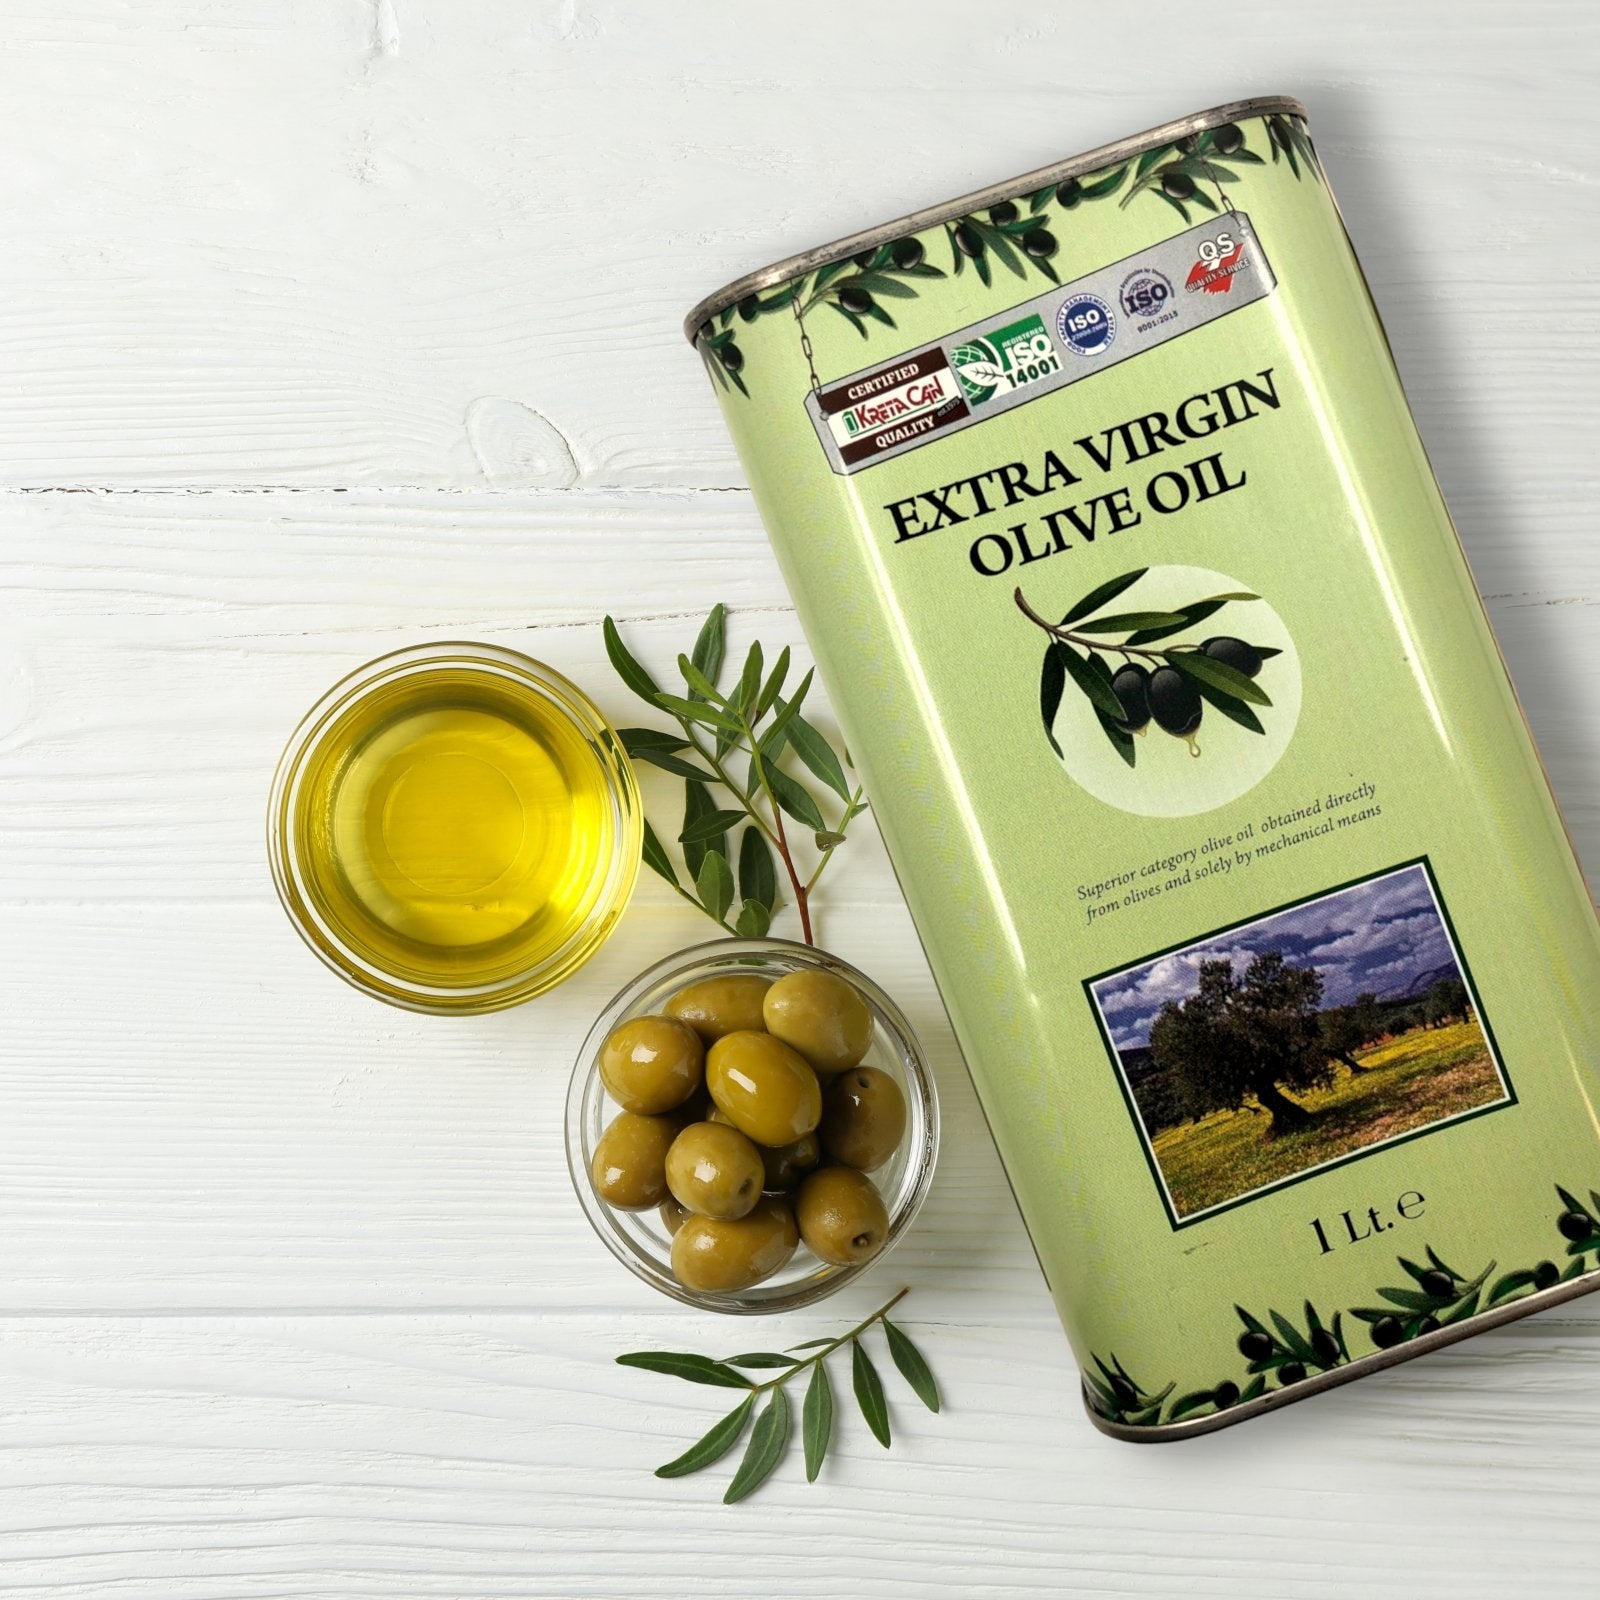 Griechisches Olivenöl nativ extra aus Kreta – 1000ml Dose - OlivenZauber - Olivenöl neu erleben